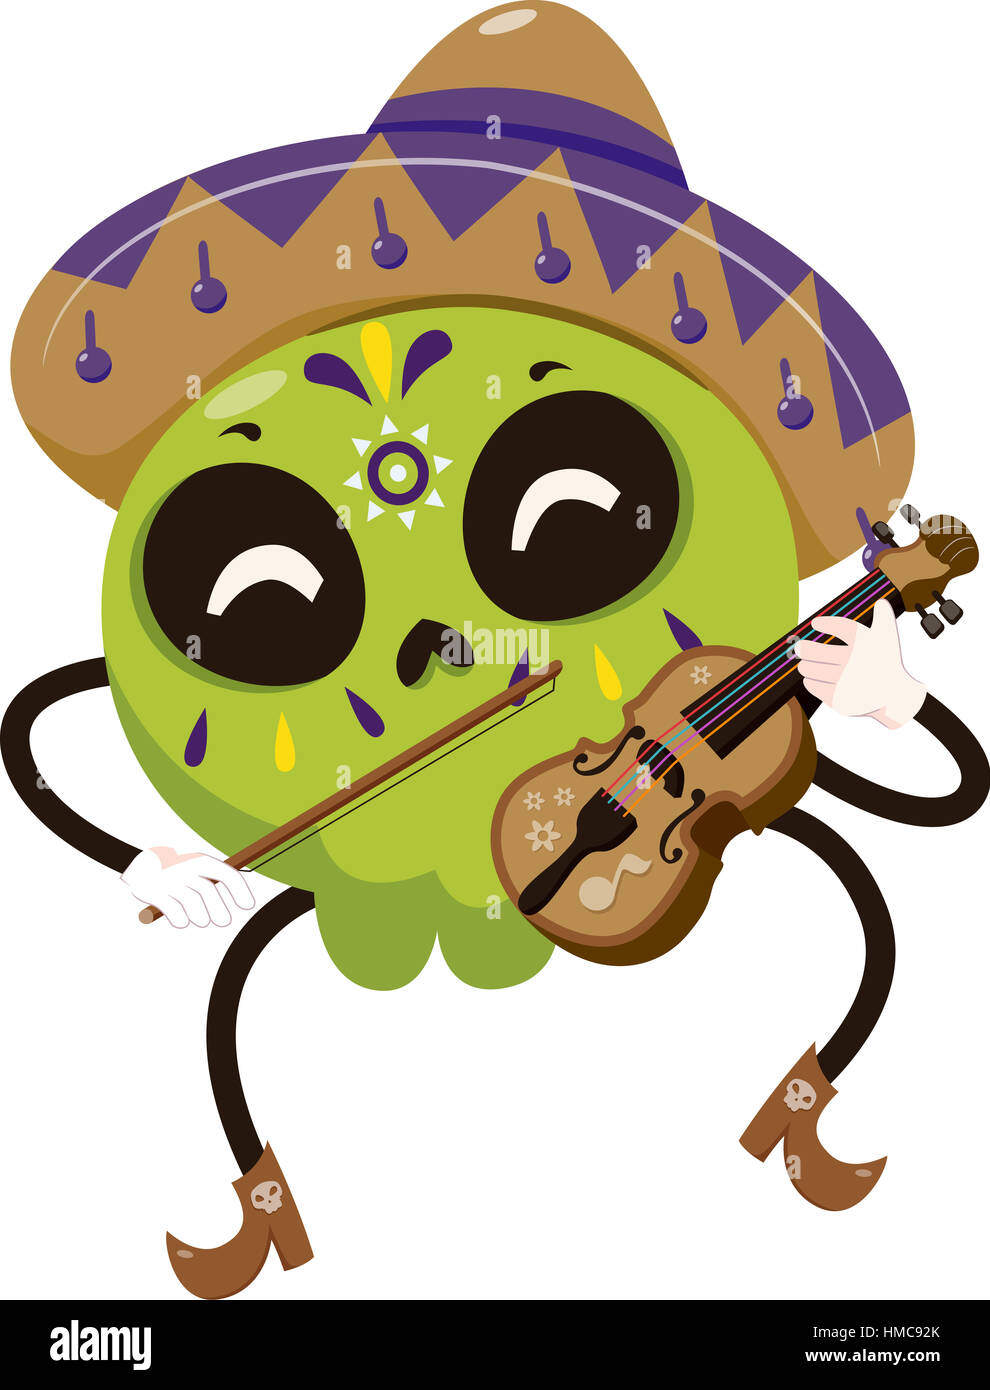 Mascot Illustration d'un crâne en sucre coloré vêtu d'un costume de Mariachi à jouer du violon Banque D'Images